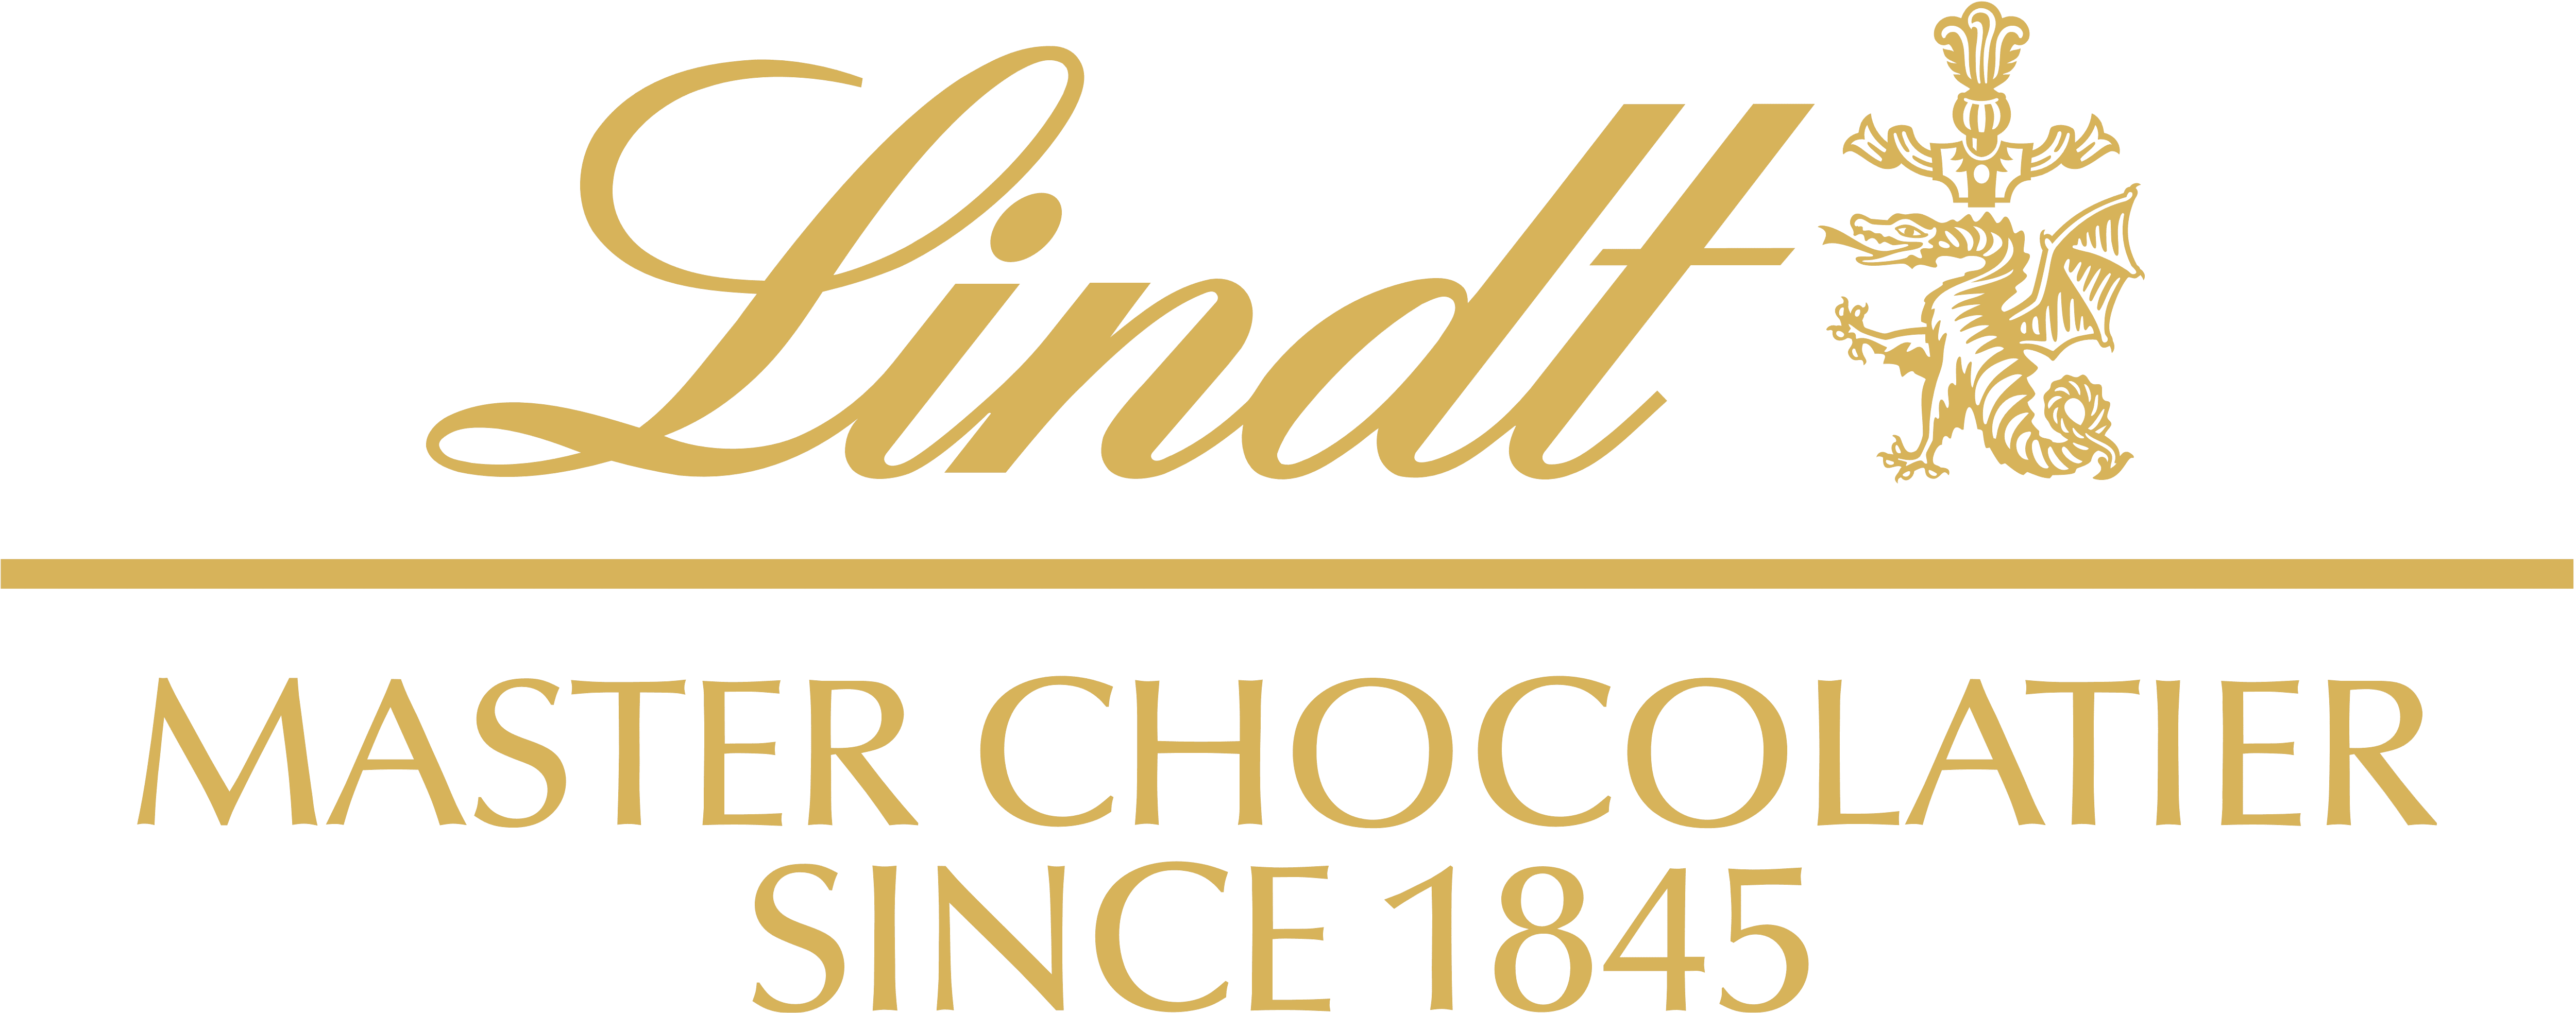 Lindt_logo